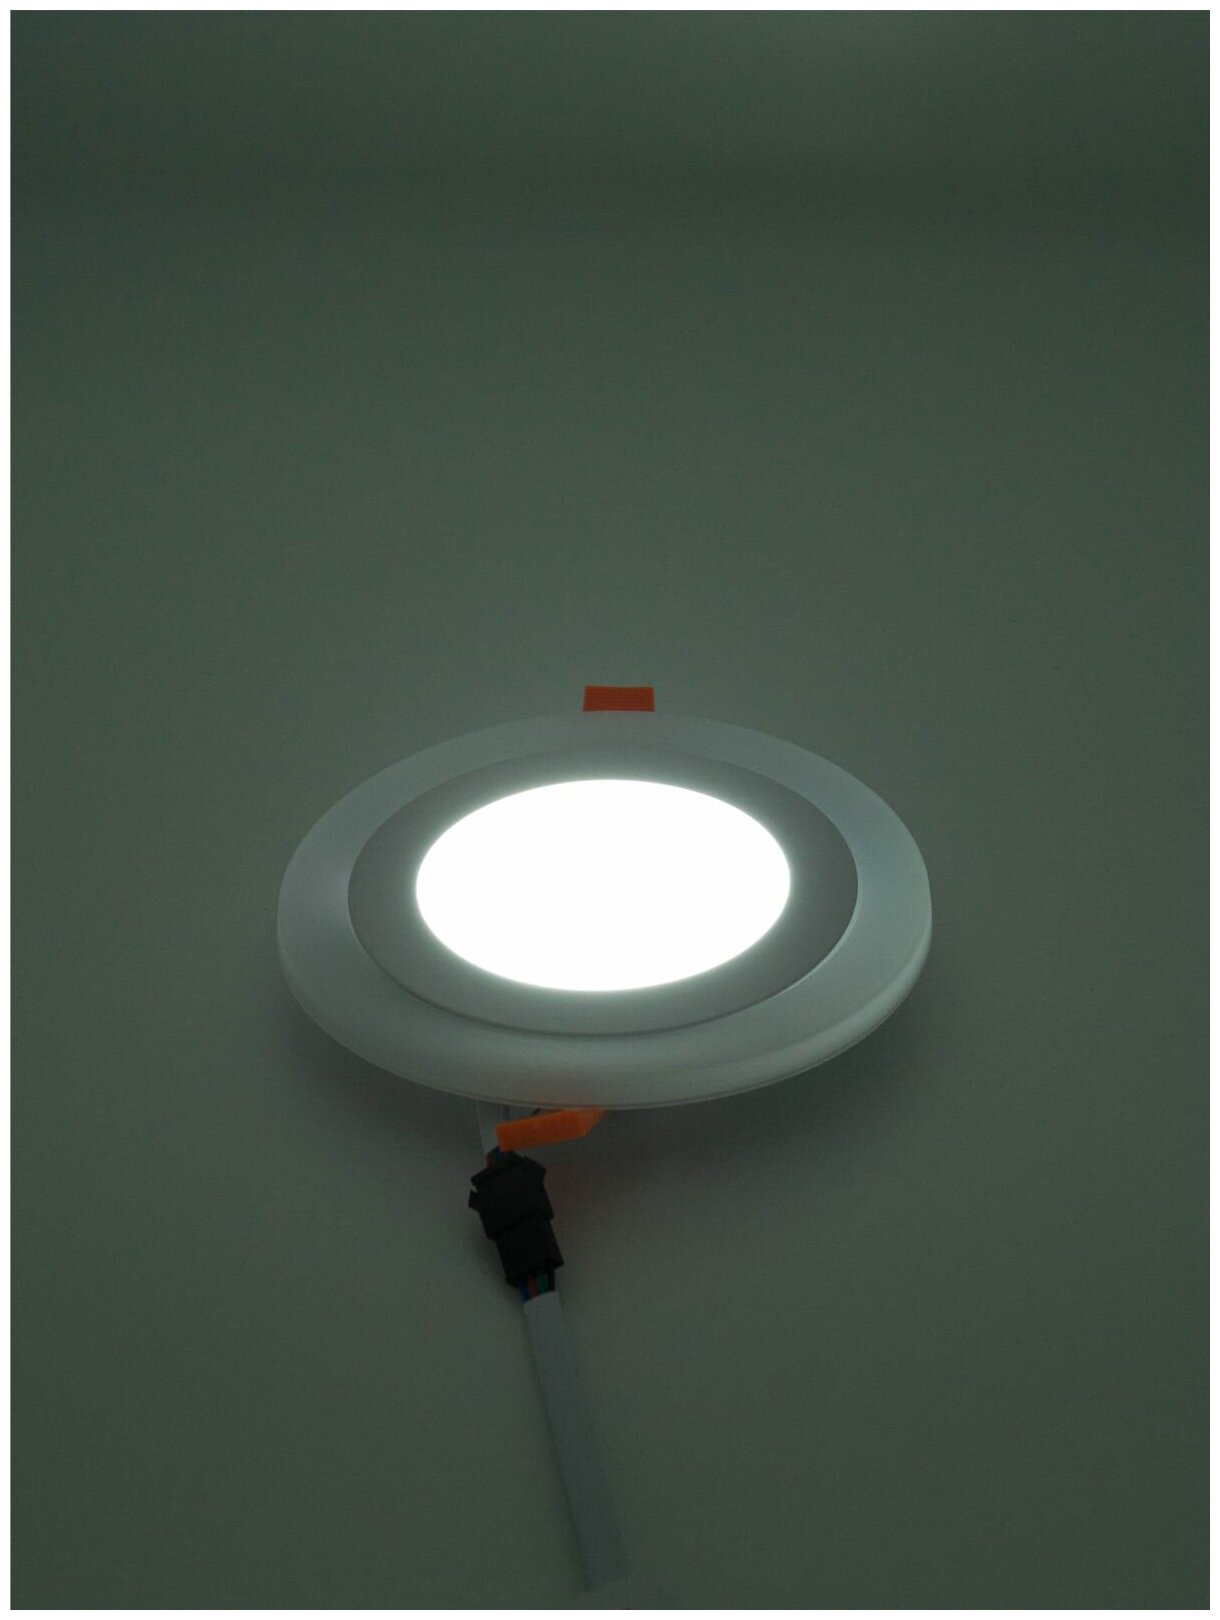 Светильник "даунлайт" (3 режима) Ecola LED downlight встраив. Круглый с подсветкой 9(6+3)W 220V 6500K / 6500K 145x20